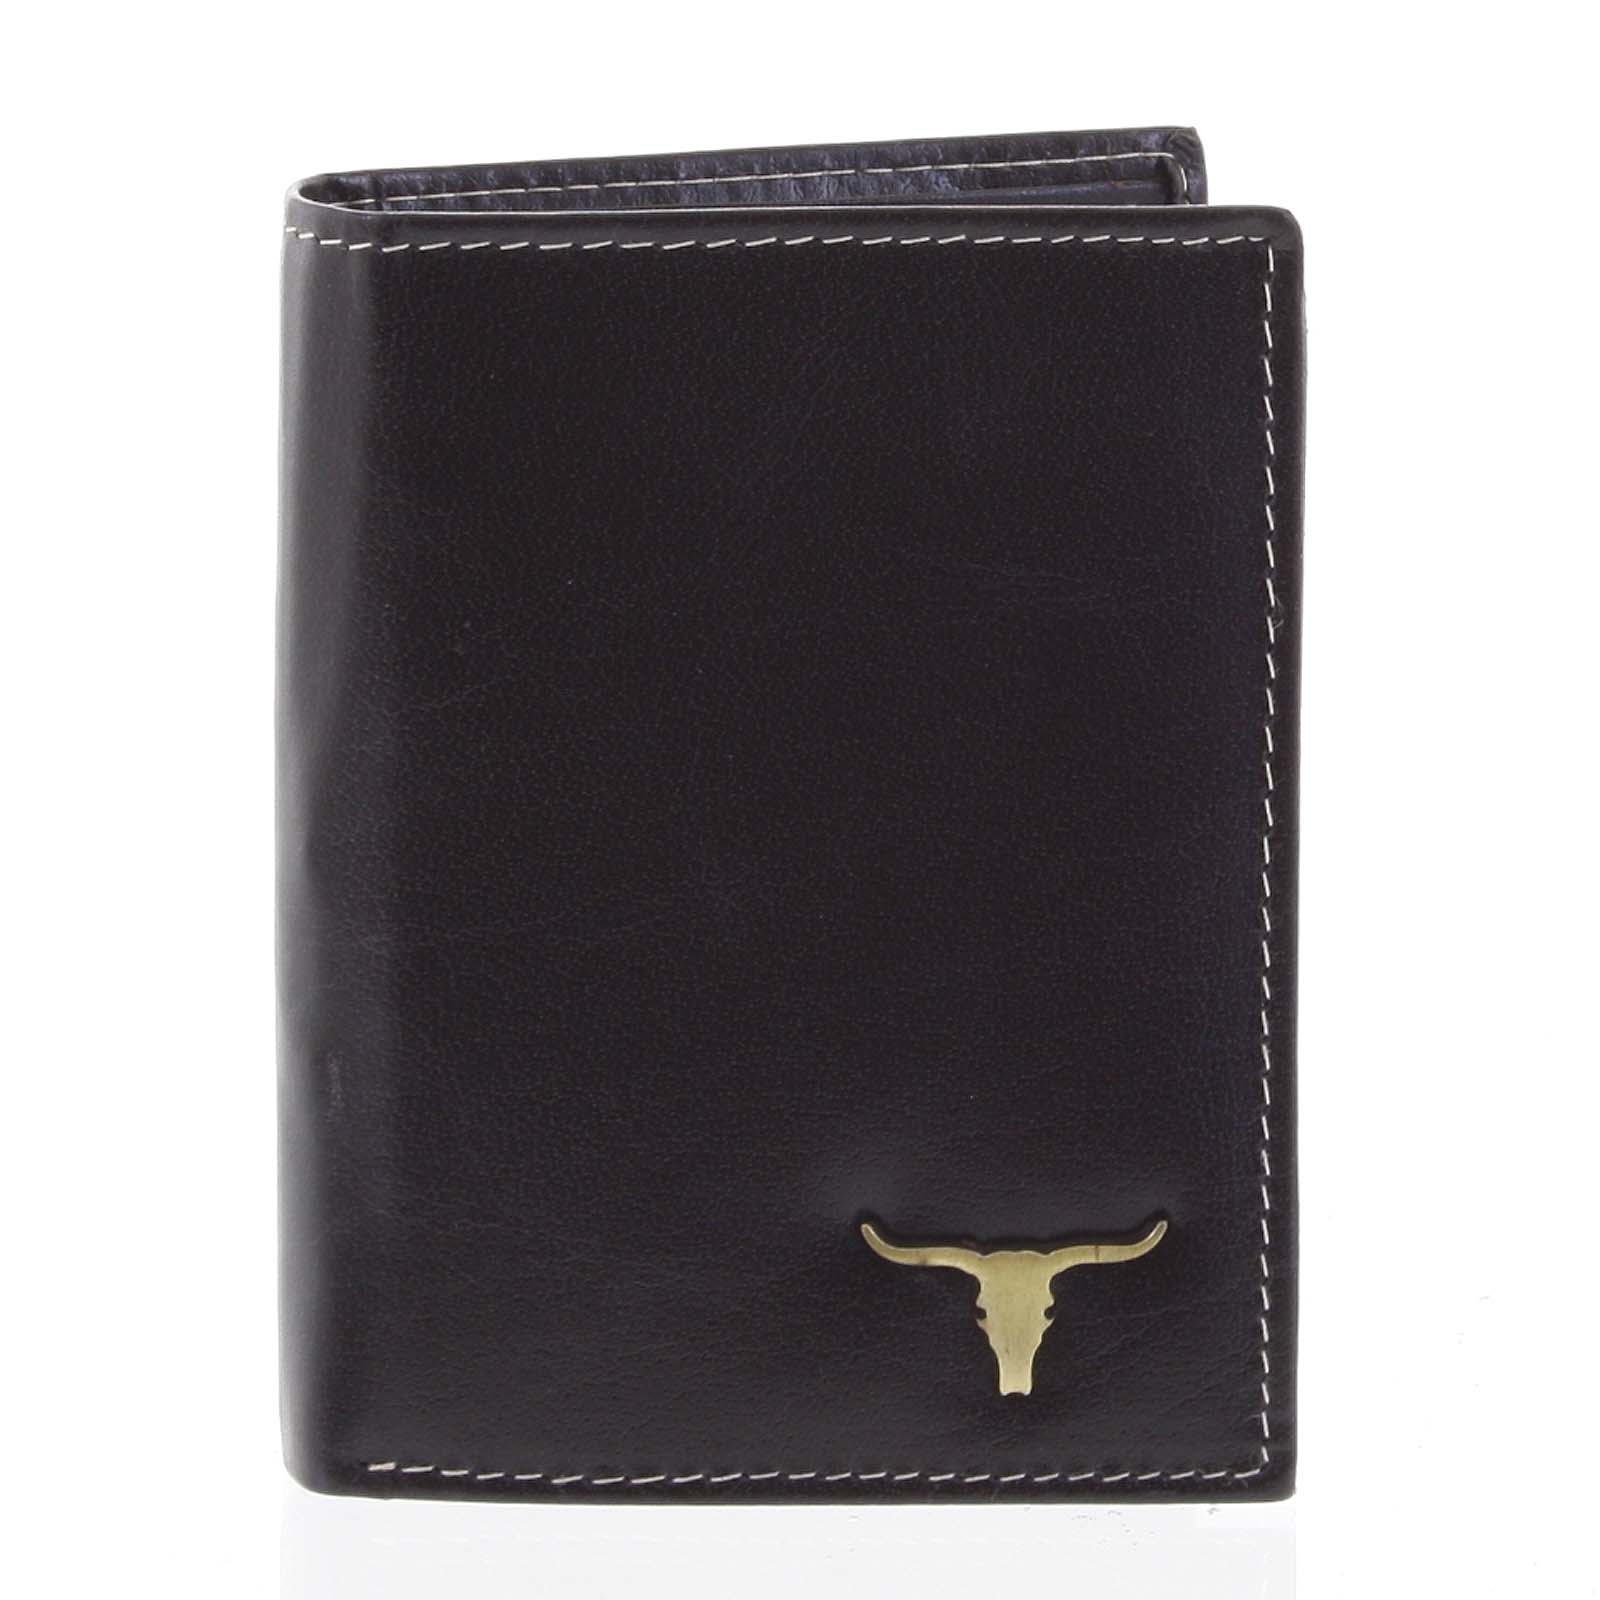 Kvalitná pánska kožená čierna peňaženka - BUFFALO Paden